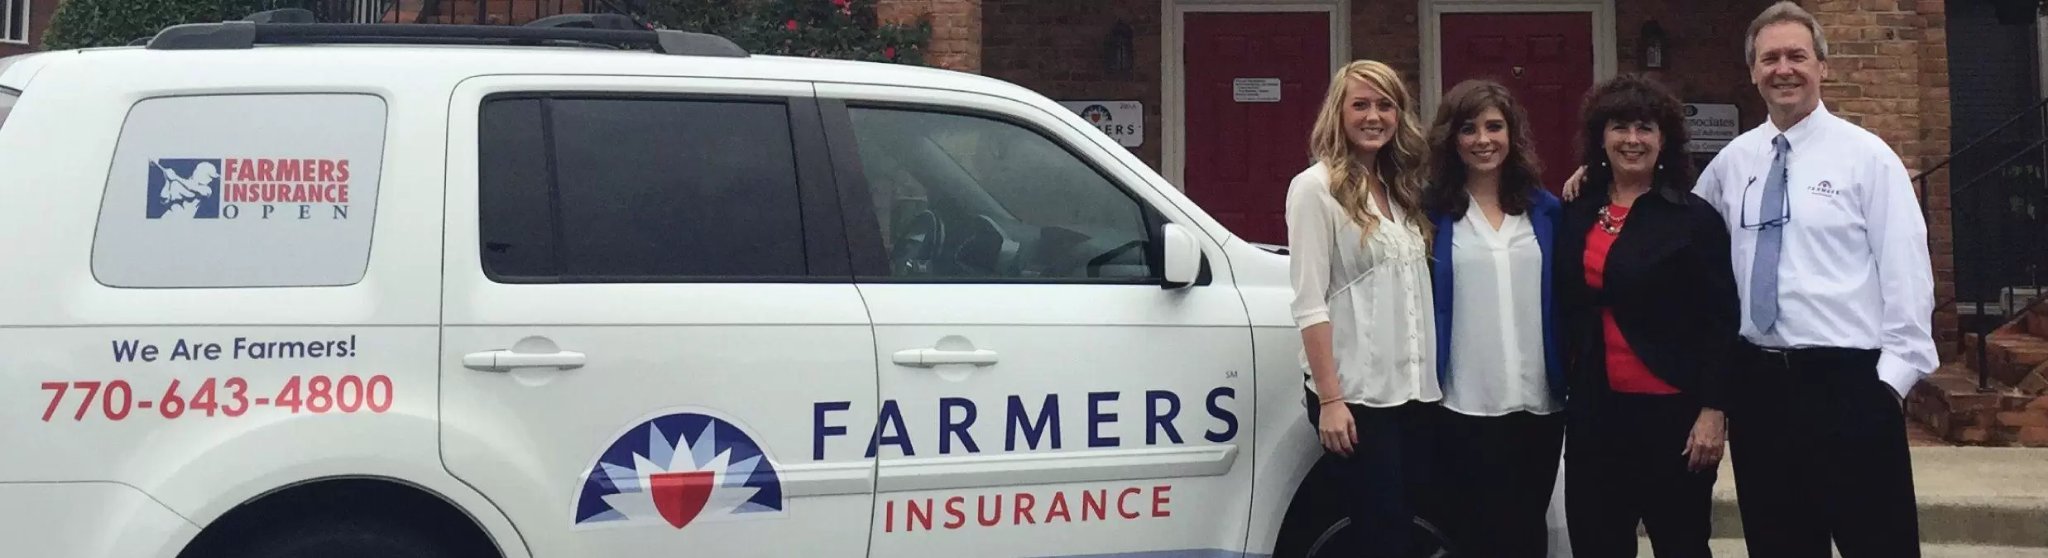 Mark Lane Agency - Farmers Insurance